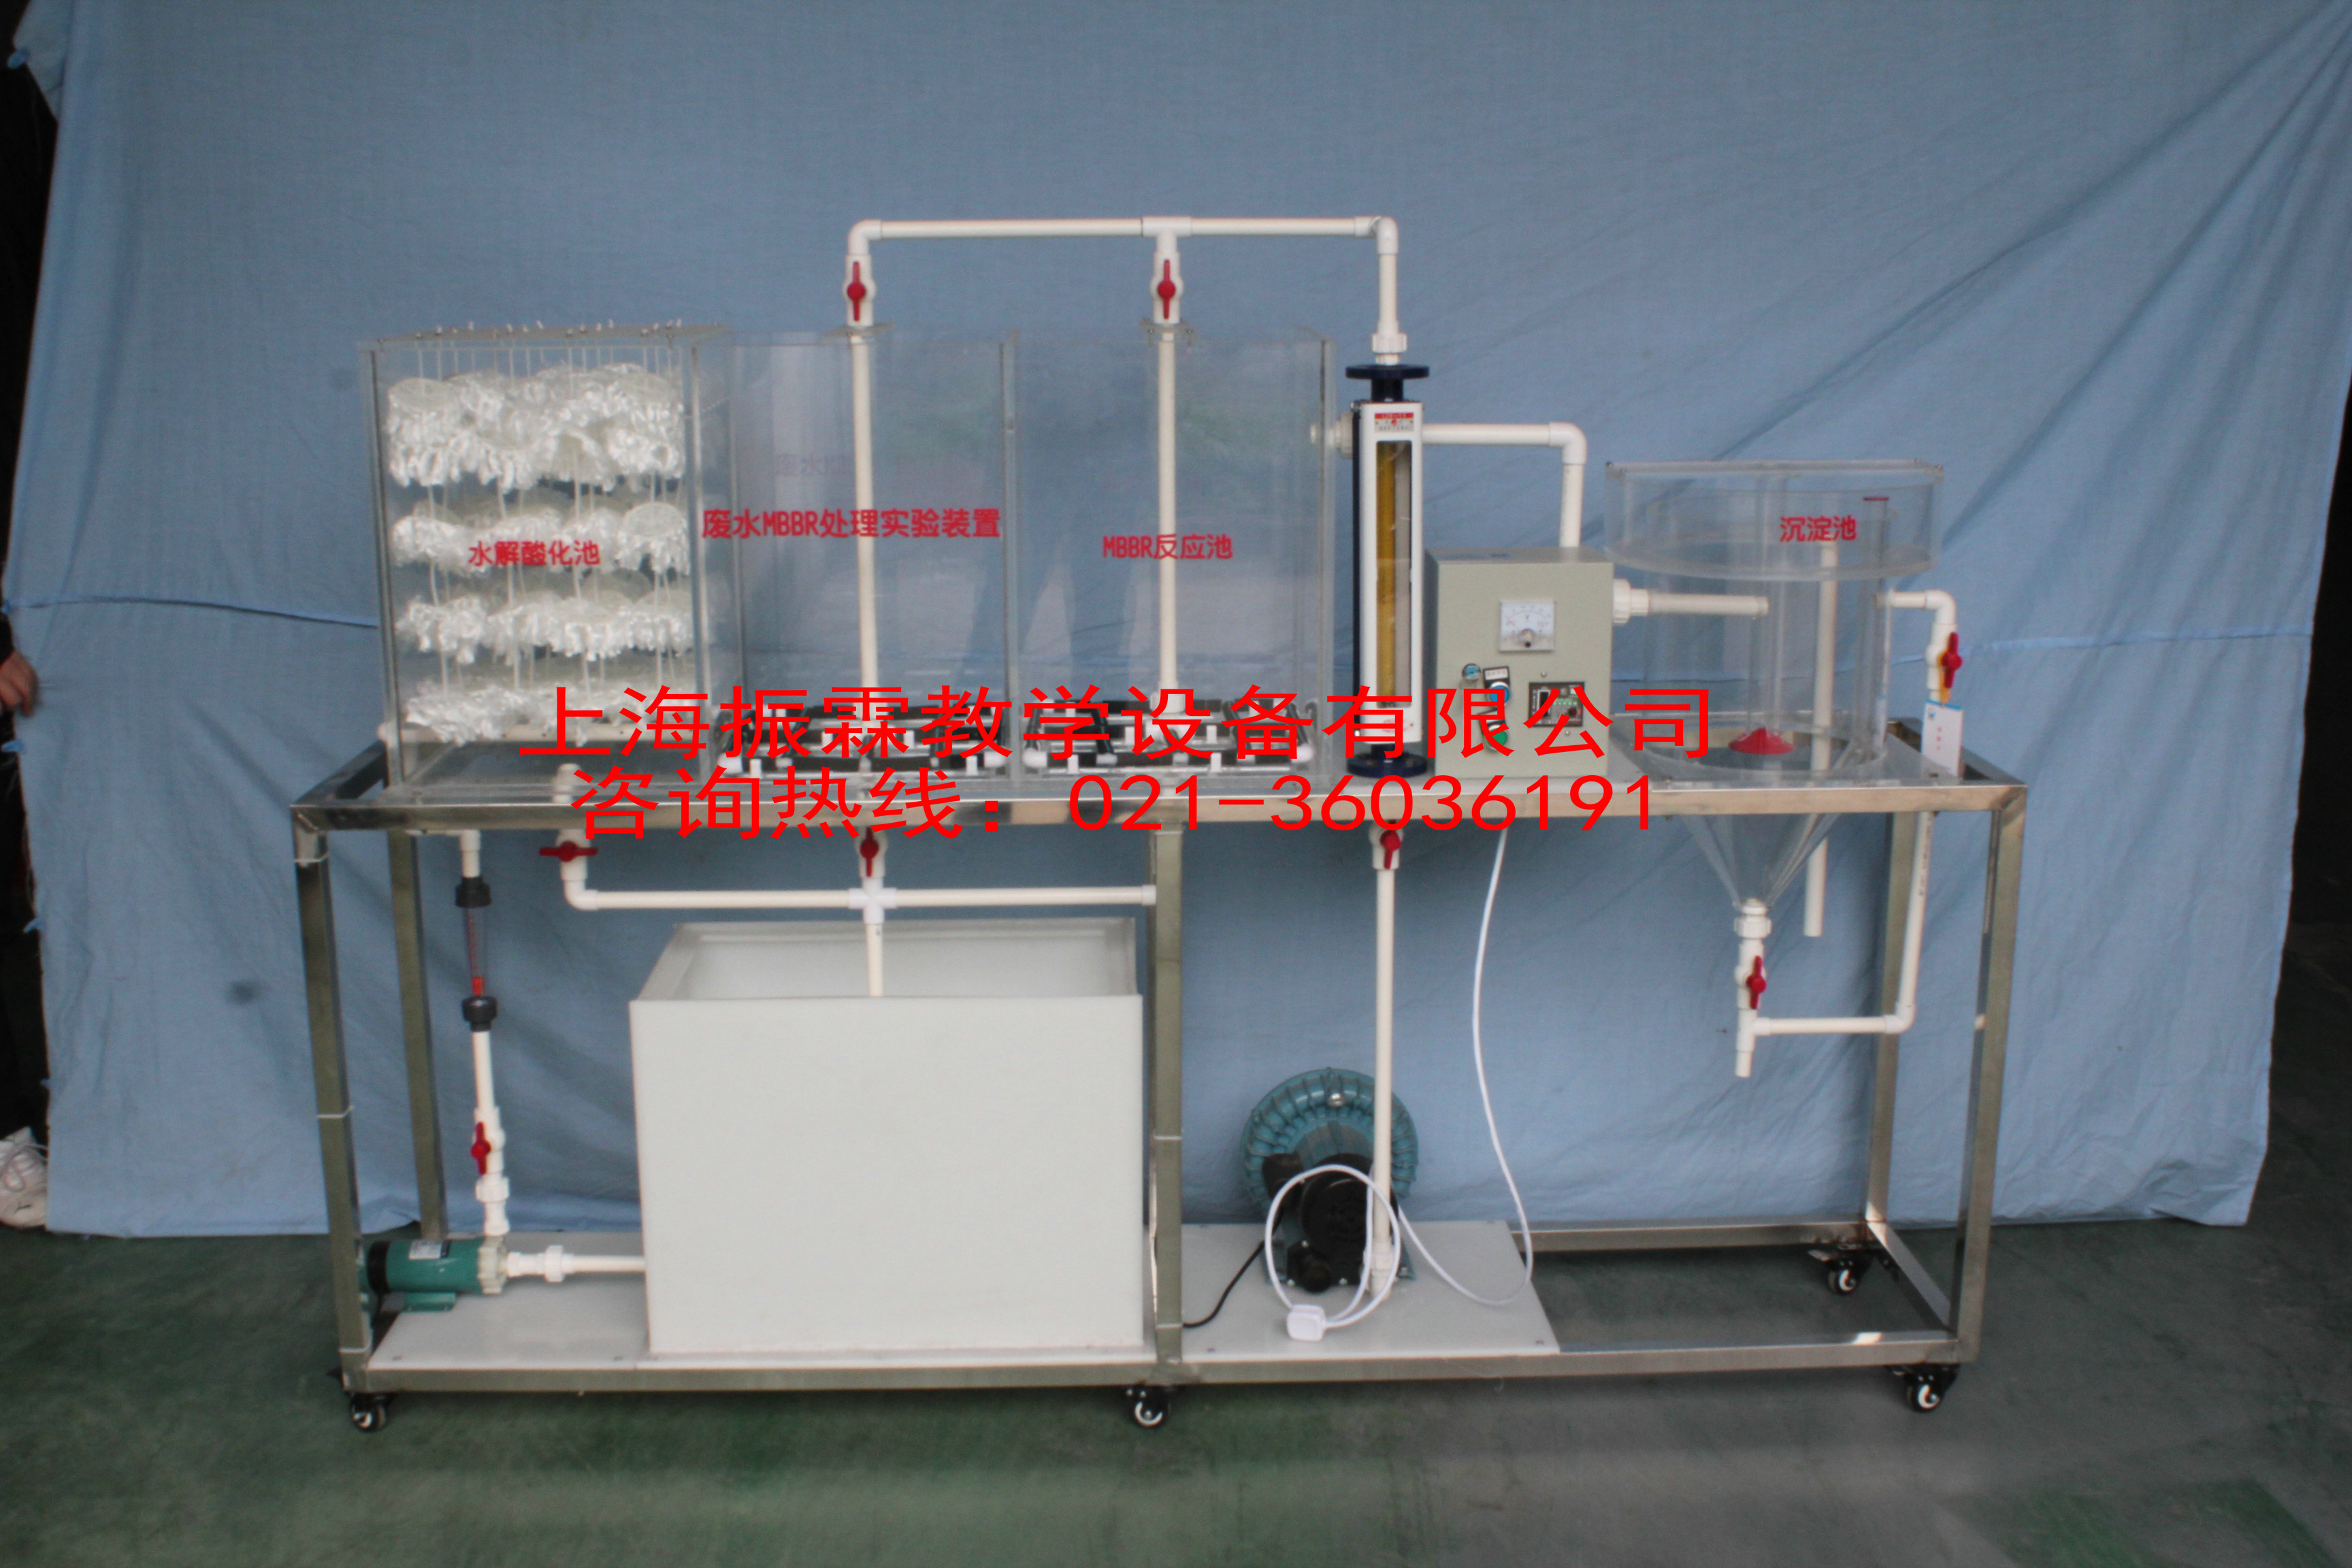 MBBR实验装置,MBBR实验系统,环境工程实验设备--上海振霖公司